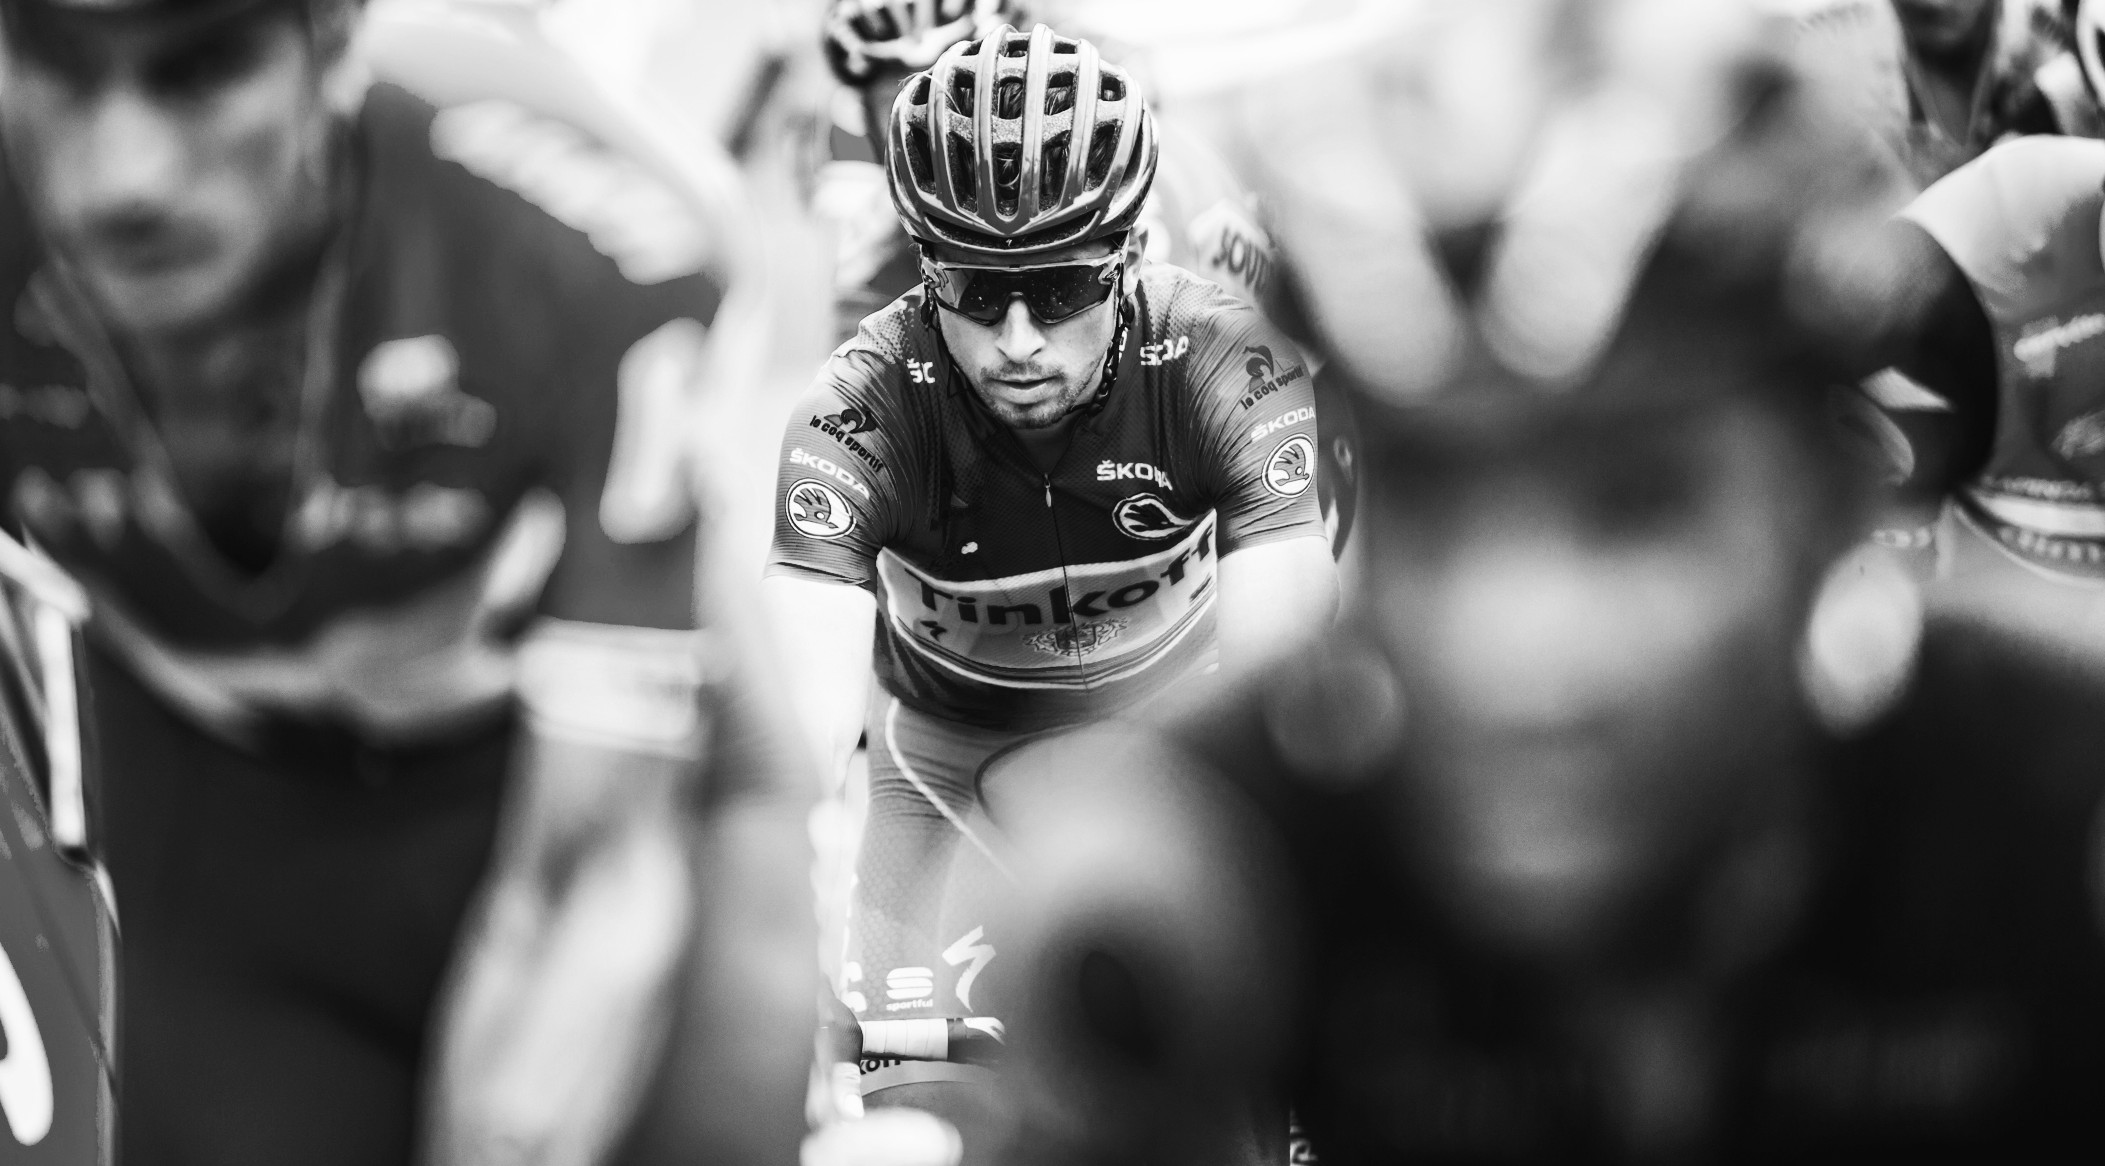 2016 Tour de France - Stage 19